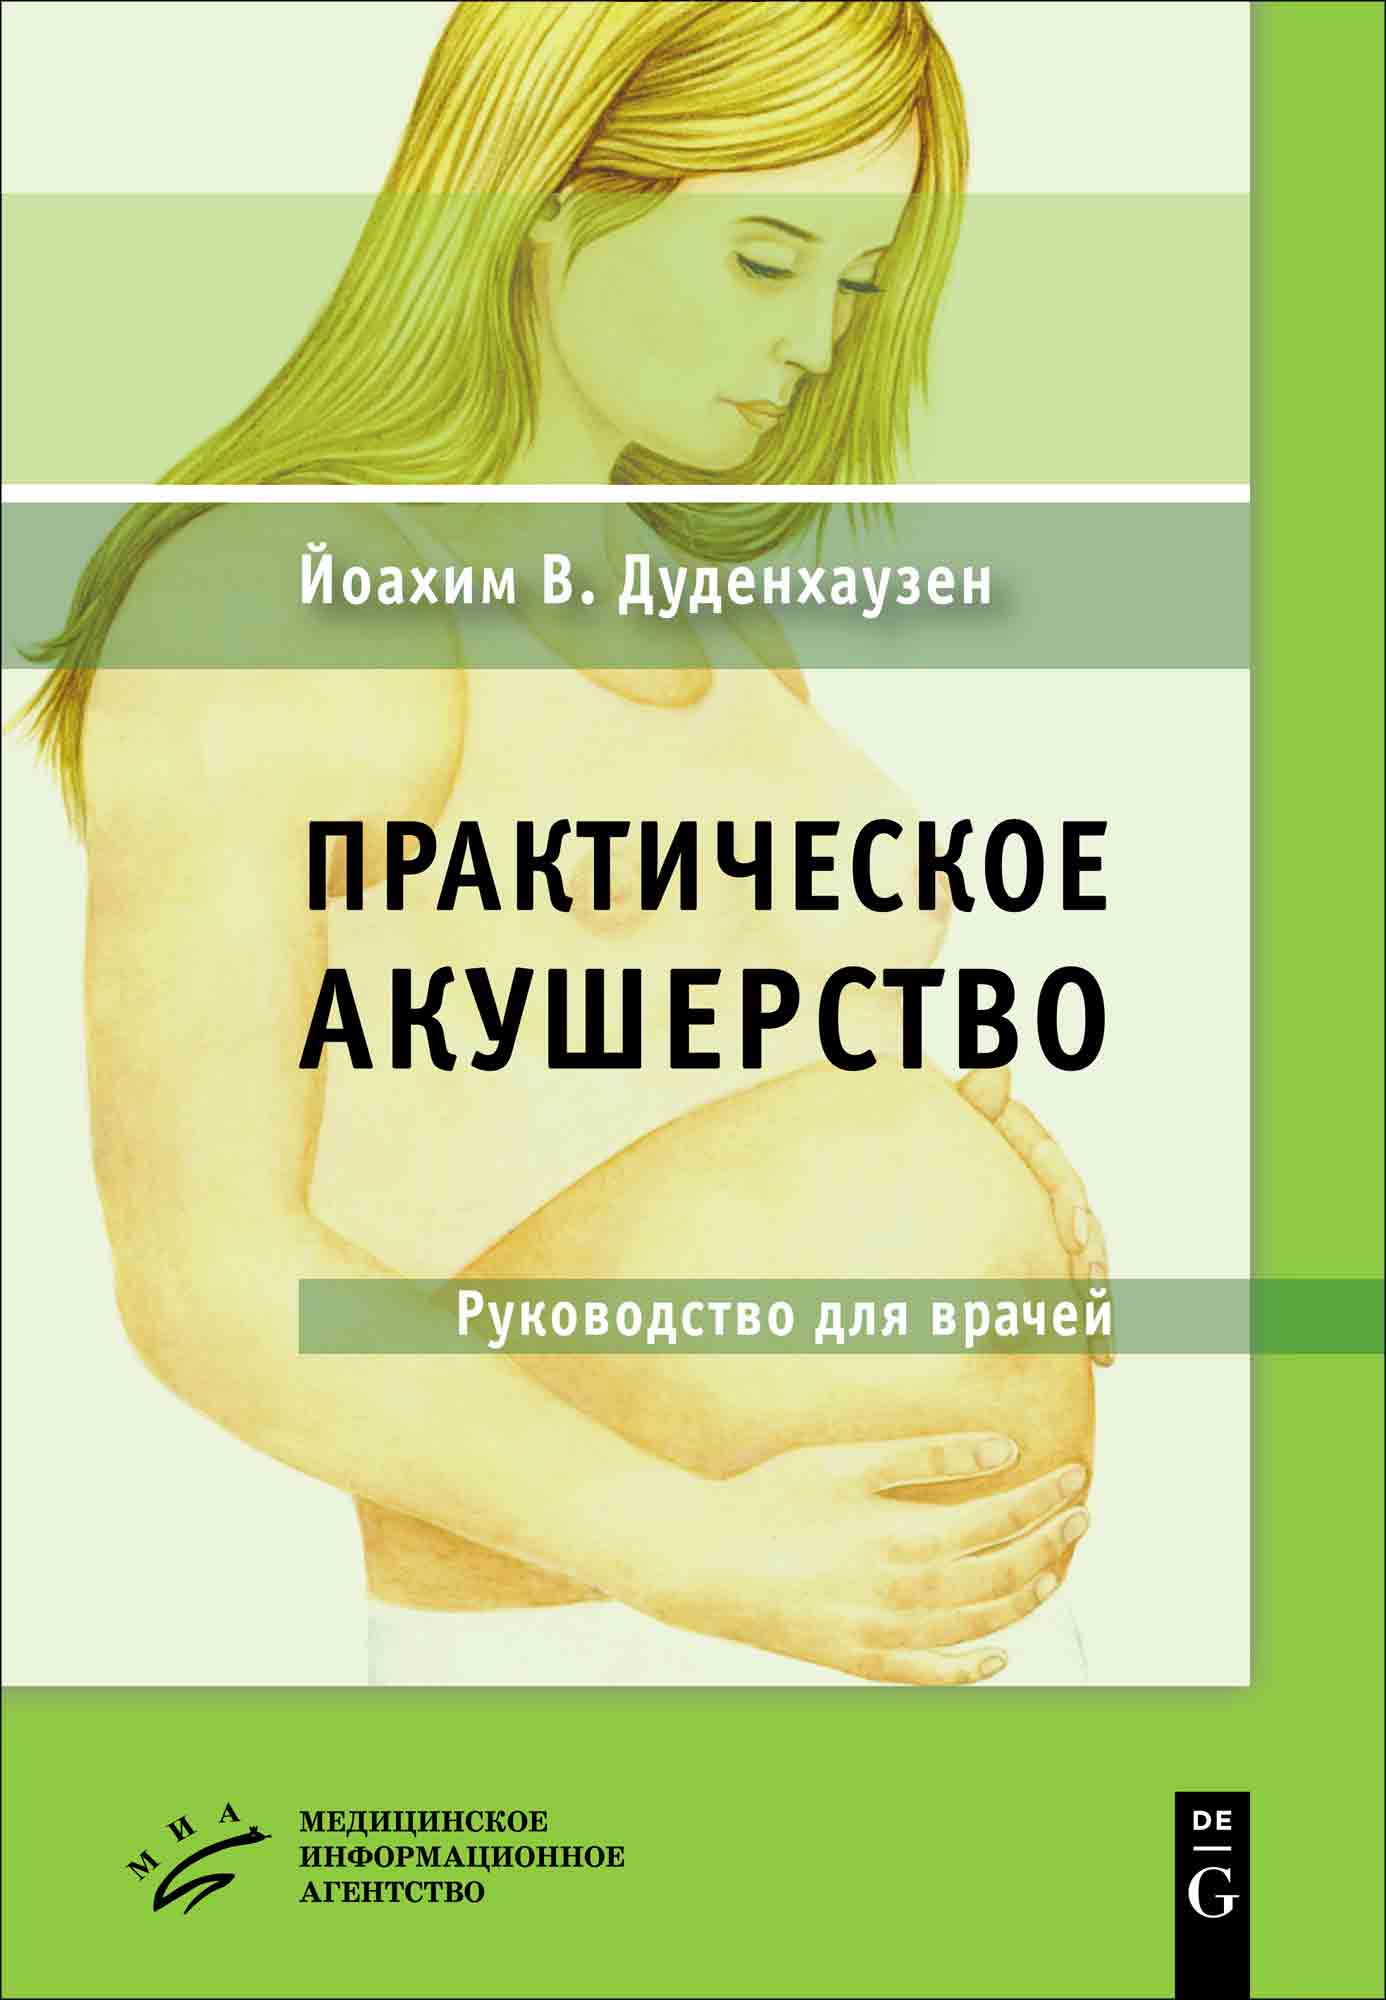 Акушерство и гинекология | MedBook